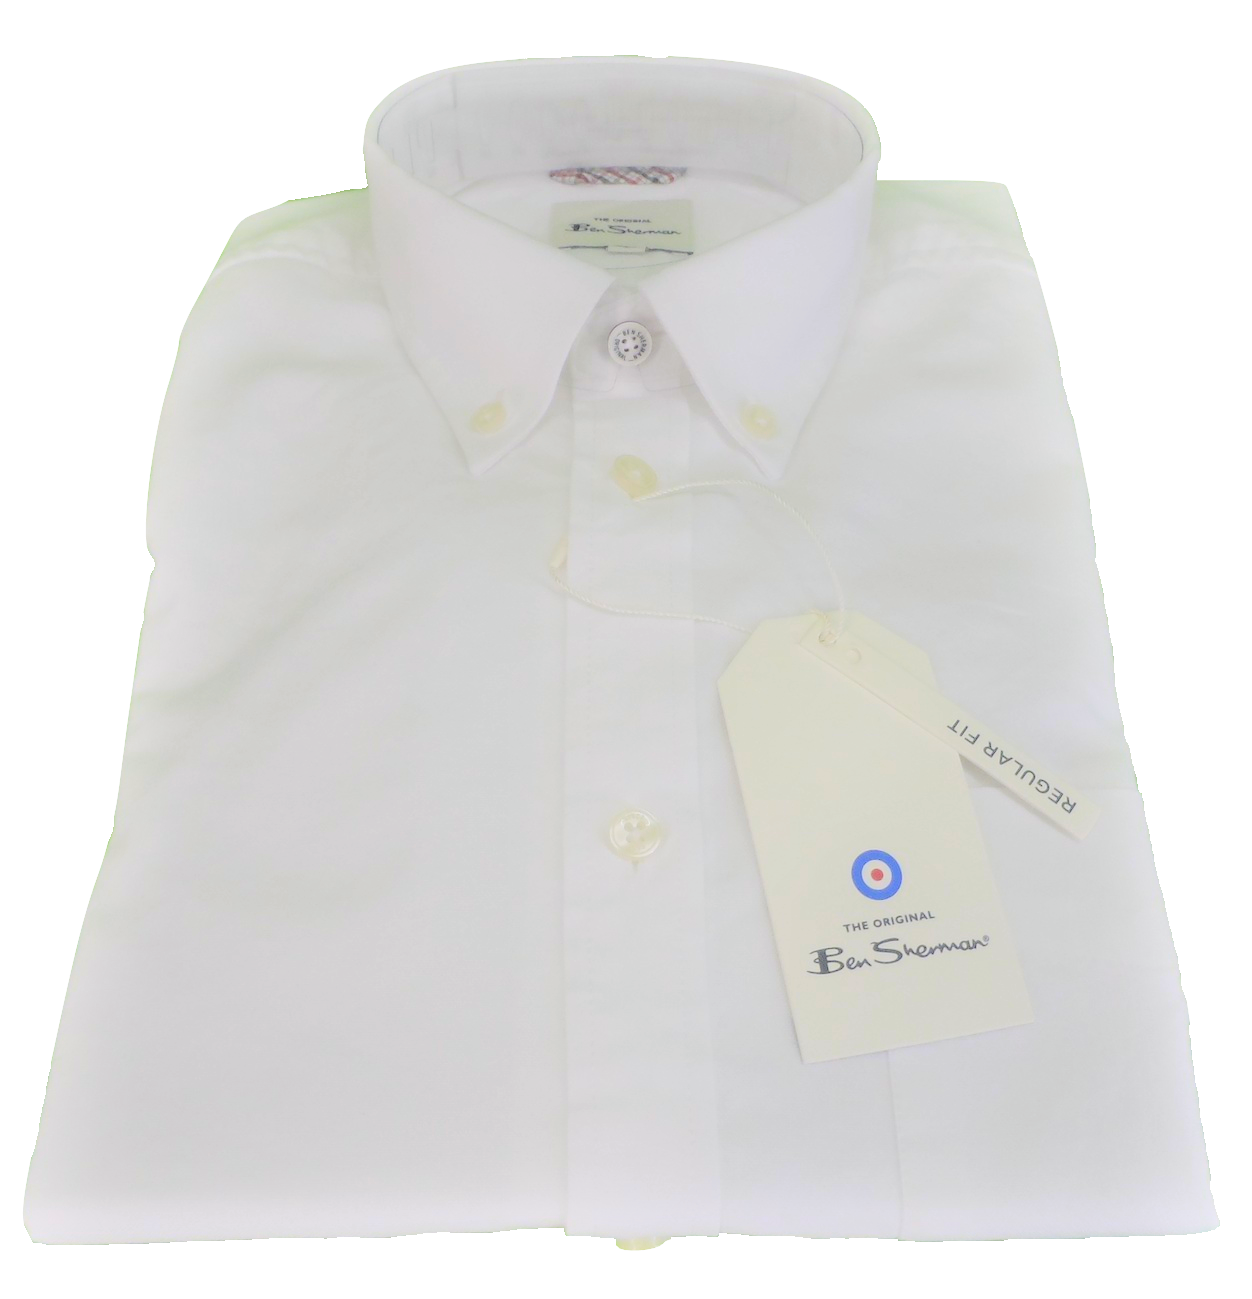 Weiße Oxford-Kurzarmhemden für Herren Ben Sherman 100 % Baumwolle